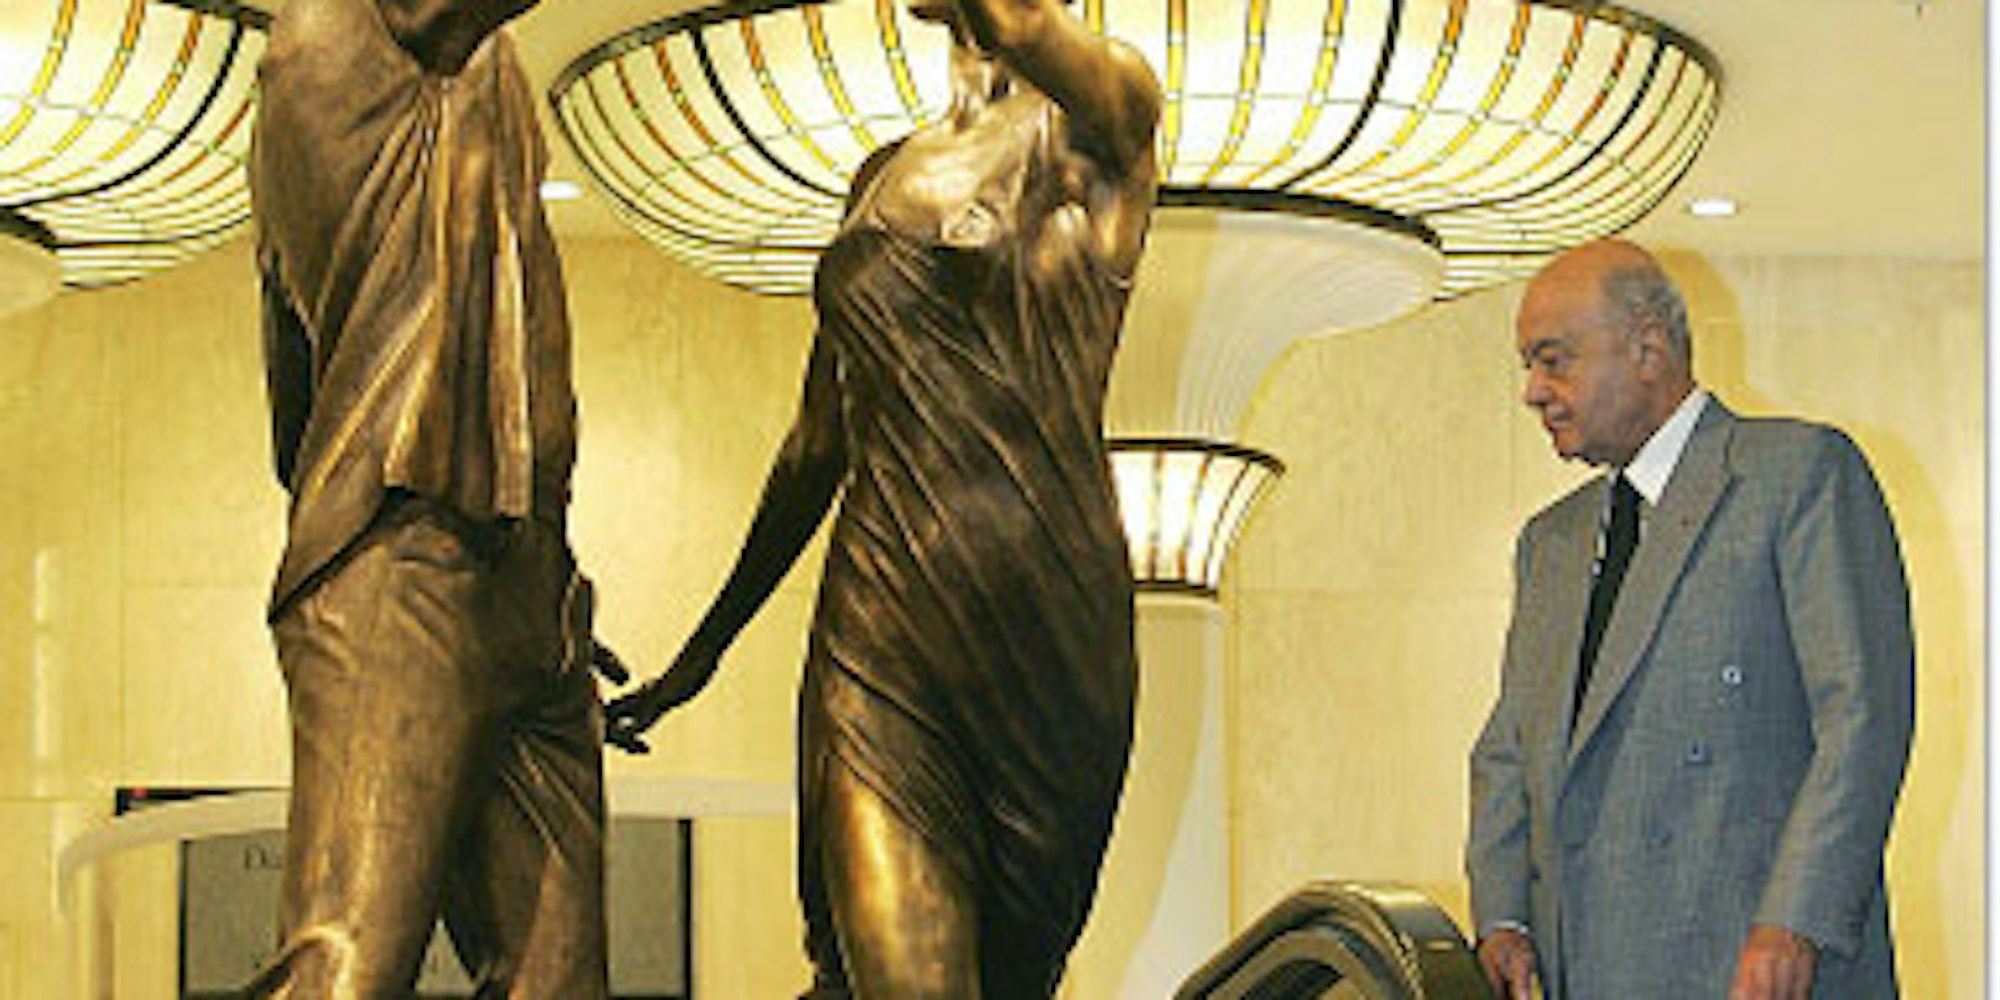 In Bronze gegossene Erinnerung: Mohammed al Fayed betrachtet sein Denkmal für Sohn Dodi und Prinzessin Diana, die vor acht Jahren ums Leben kamen.